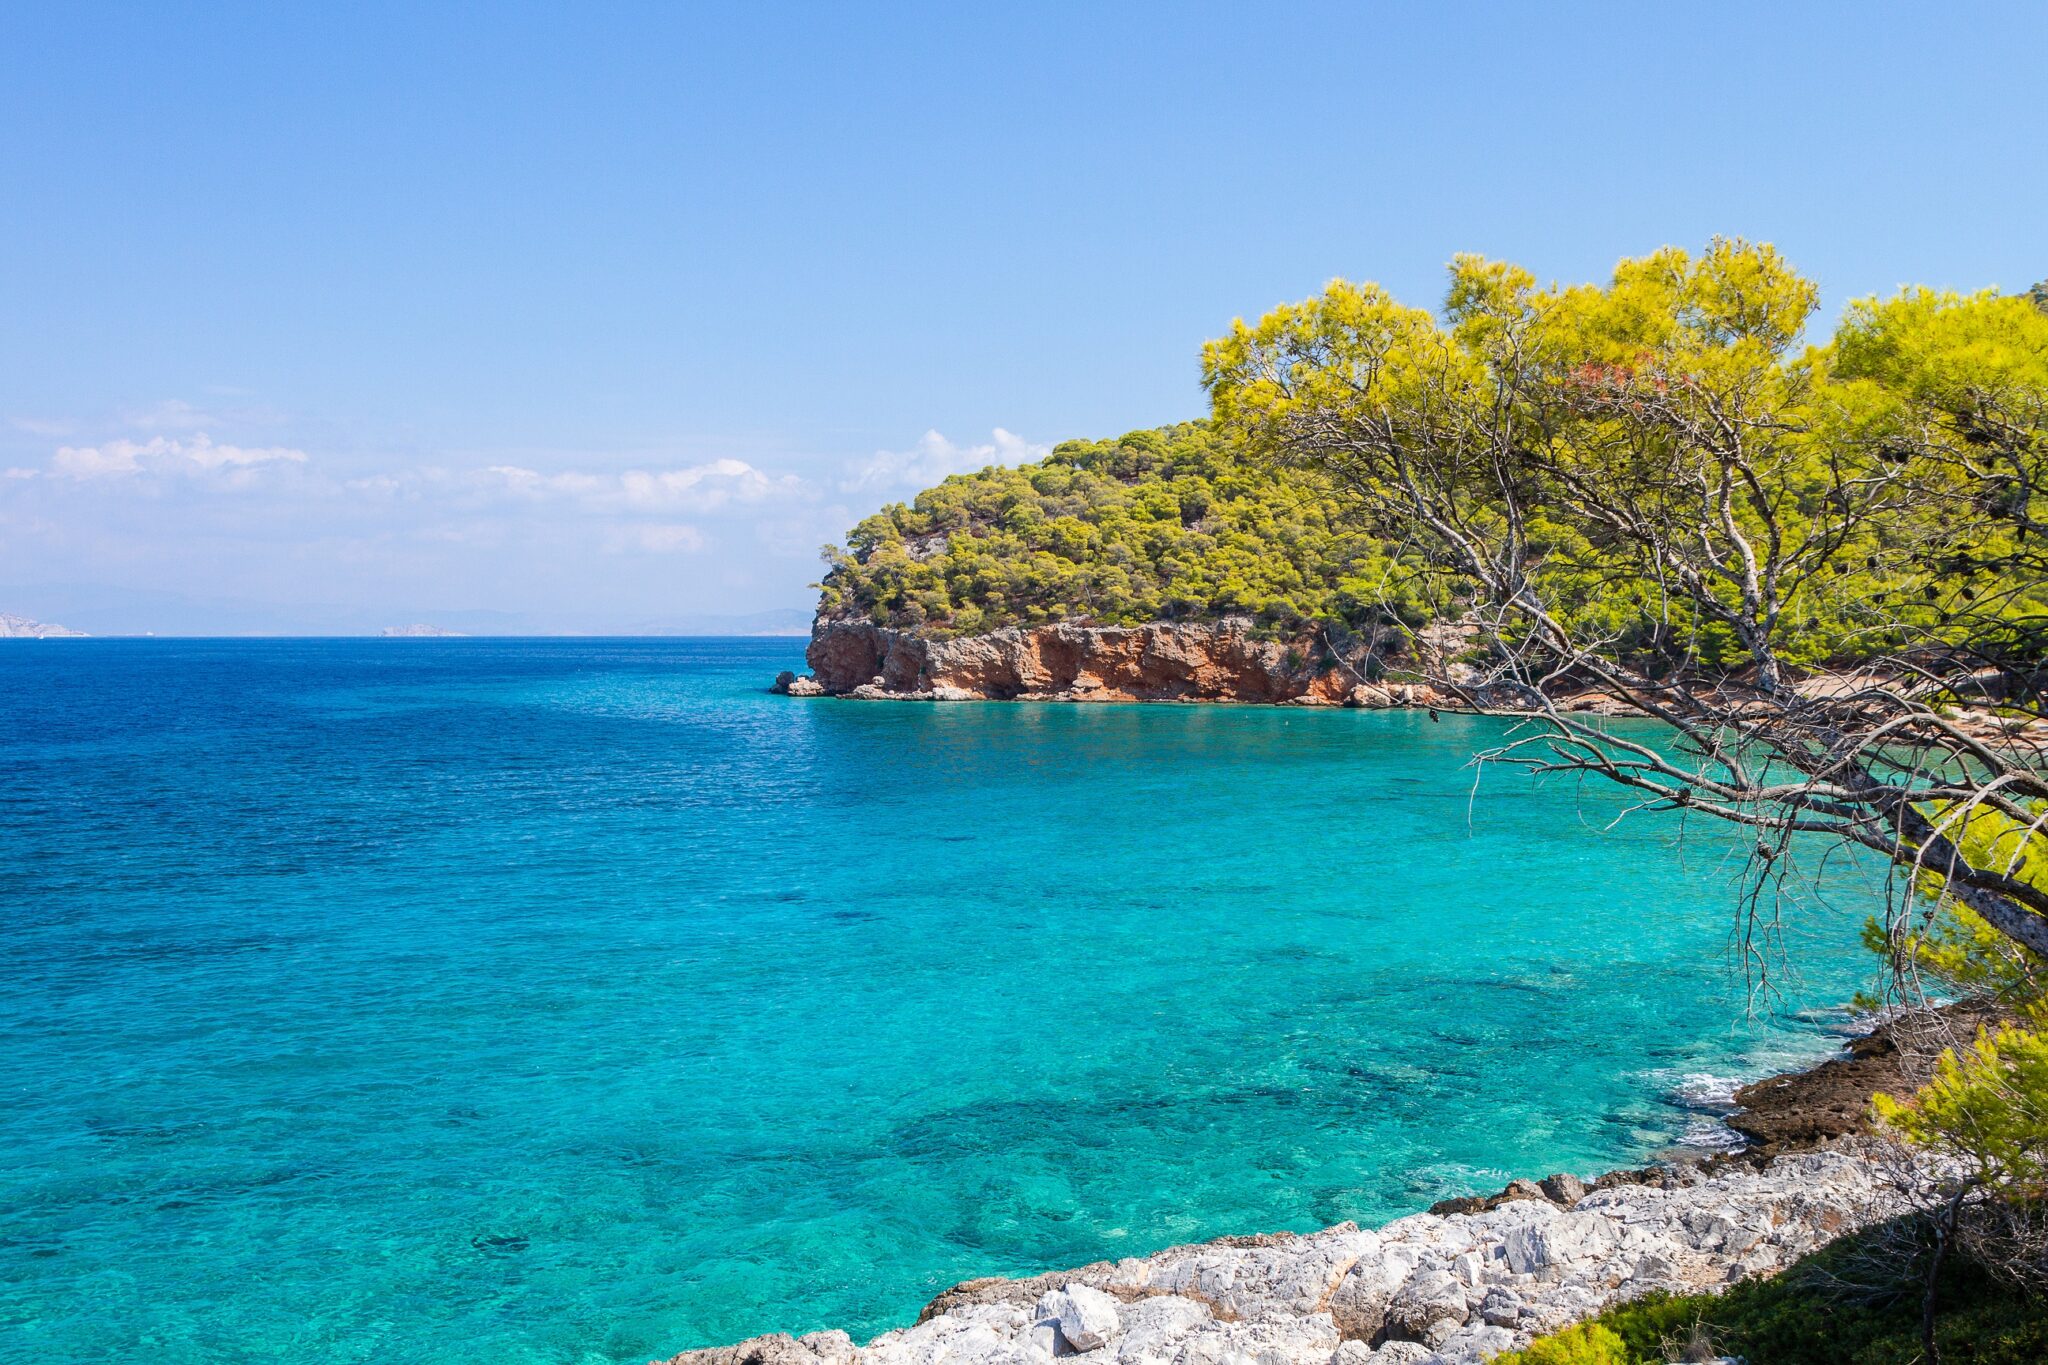 Αγκίστρι: Θάλασσες που θυμίζουν Ιόνιο, πεύκα και ειδυλλιακά μαγαζιά μόλις μία ώρα μακριά από την Αθήνα | travel.gr